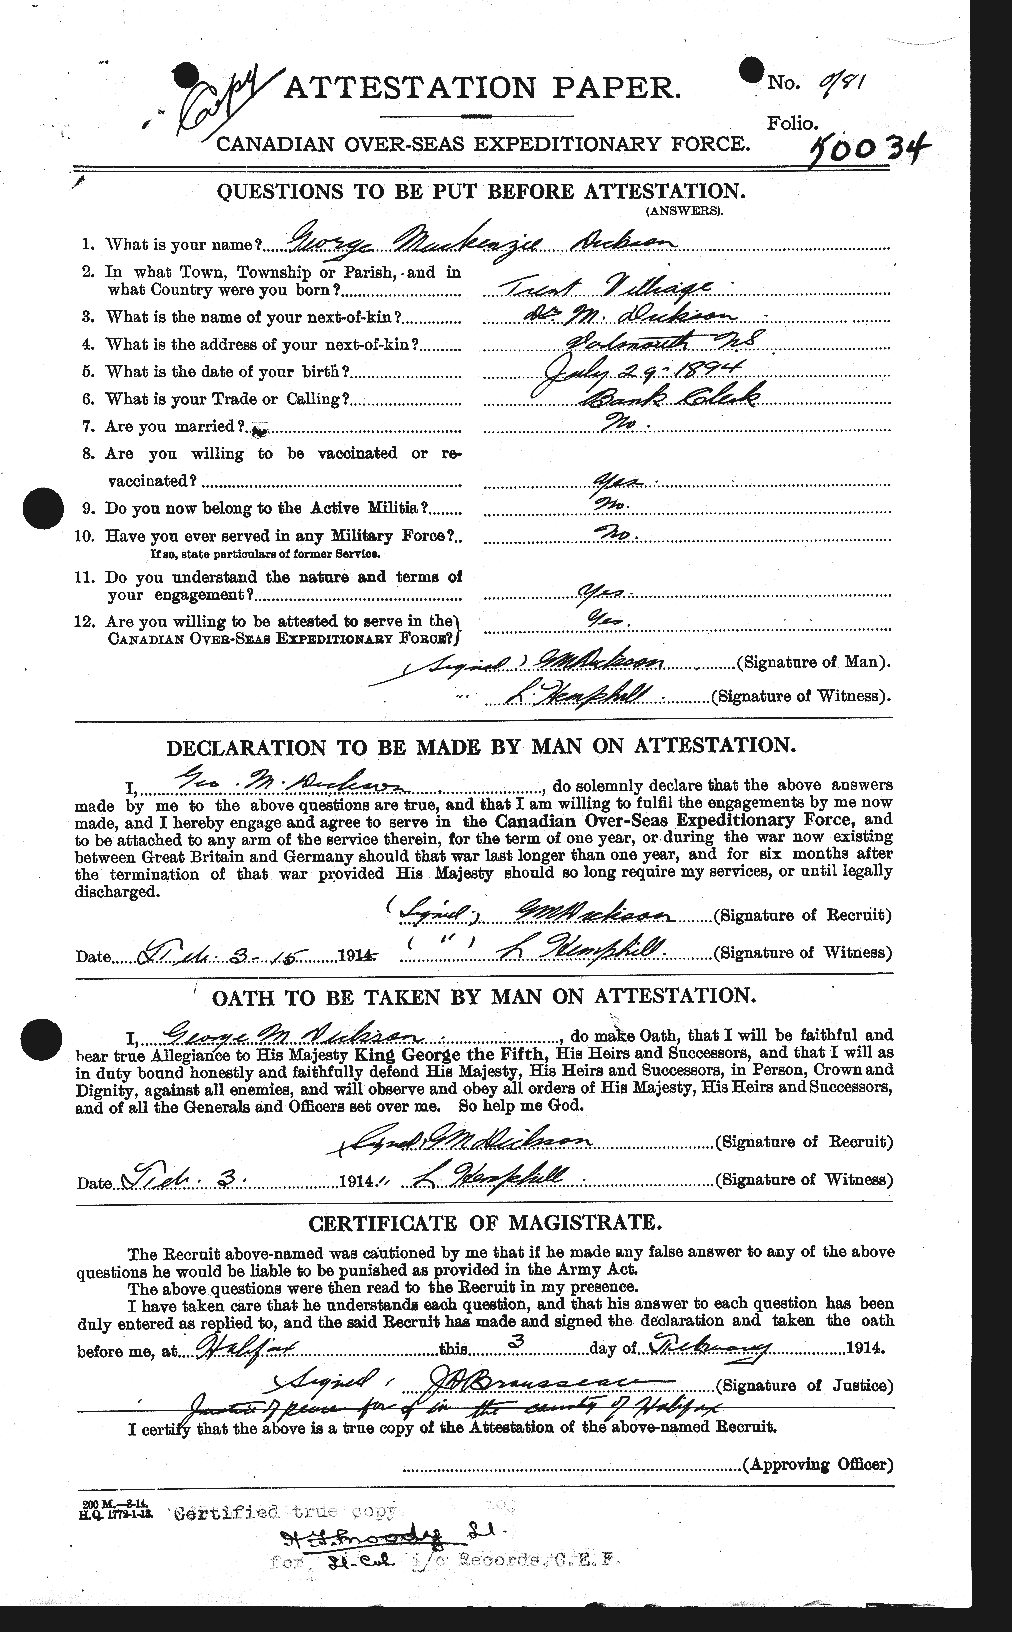 Dossiers du Personnel de la Première Guerre mondiale - CEC 293500a